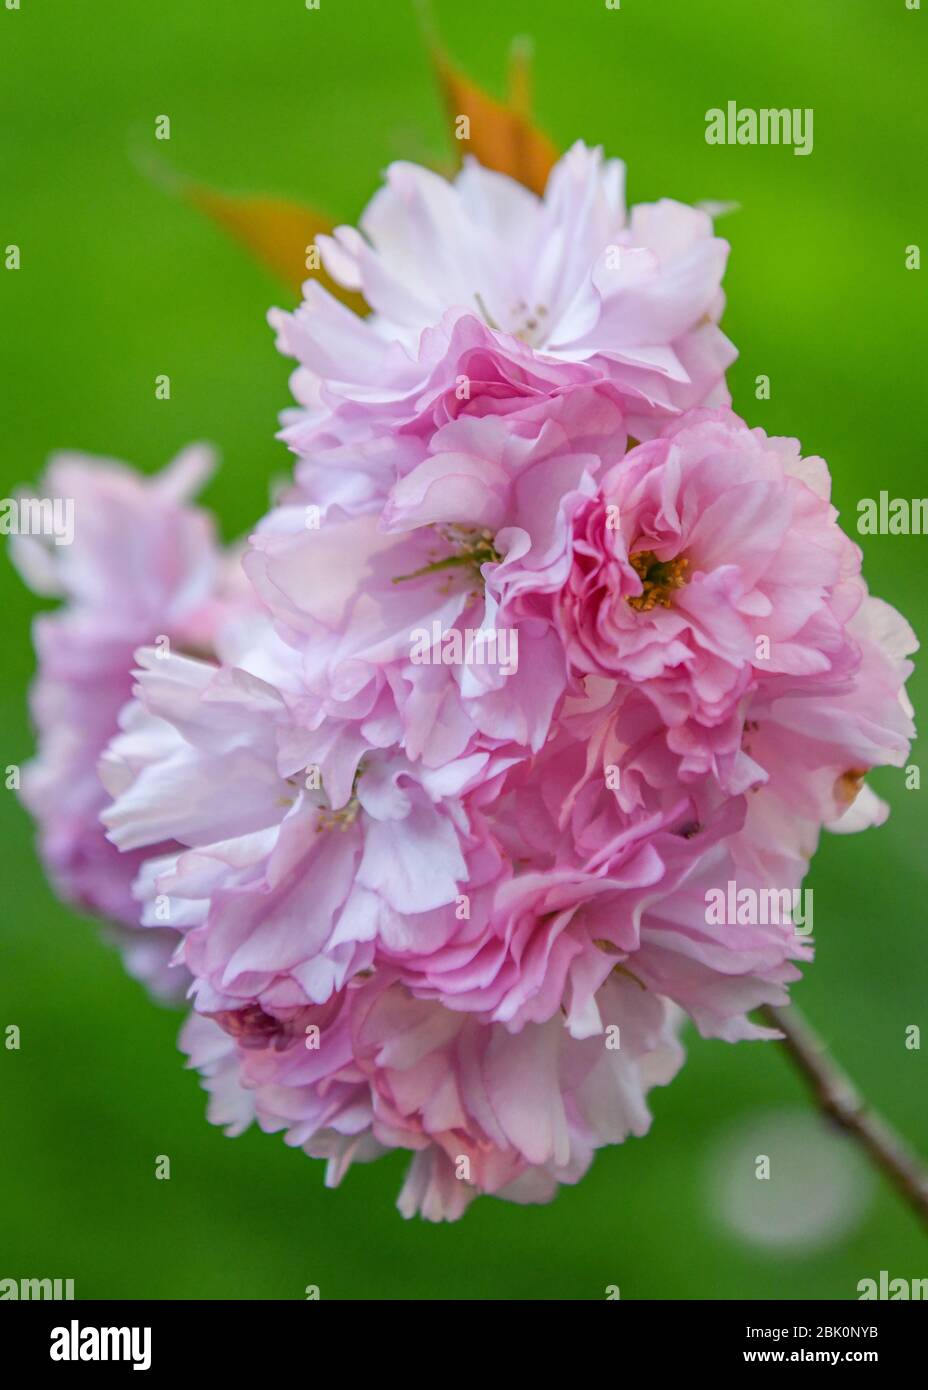 Kirschbaumblüten - Prunus serrulata Blume - Doppelkirschenbaum Blüte - Kwanzan Baum - Japanischer Kirschbaum aka. Orientalische Kirschbäume Stockfoto